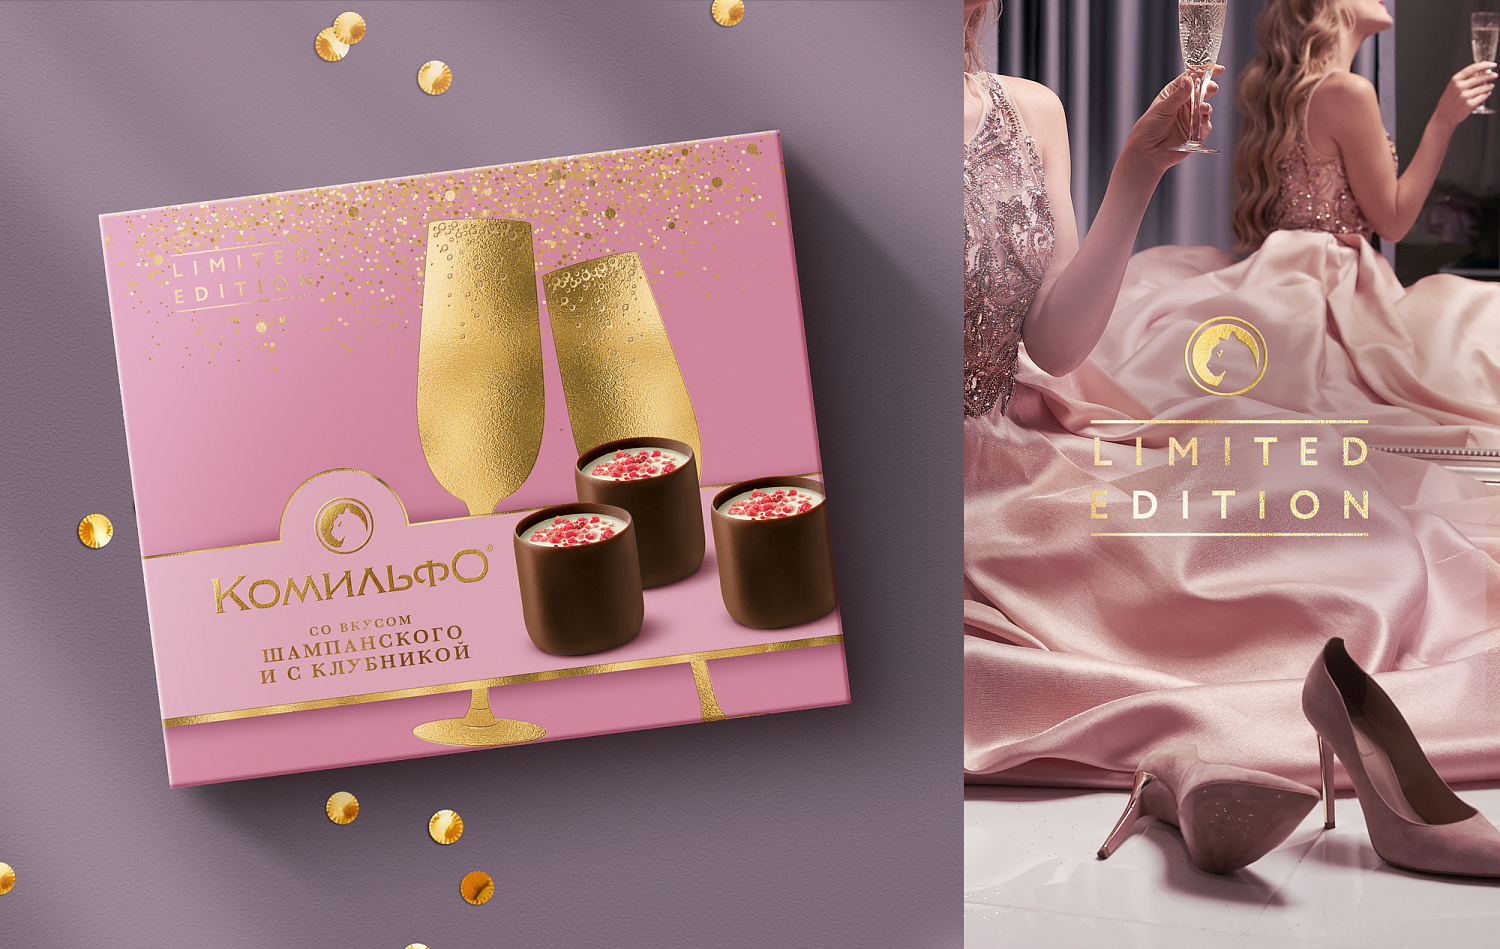 Комильфо® со вкусом шампанского и с клубникой: дизайн упаковки шоколадных конфет - Портфолио Depot